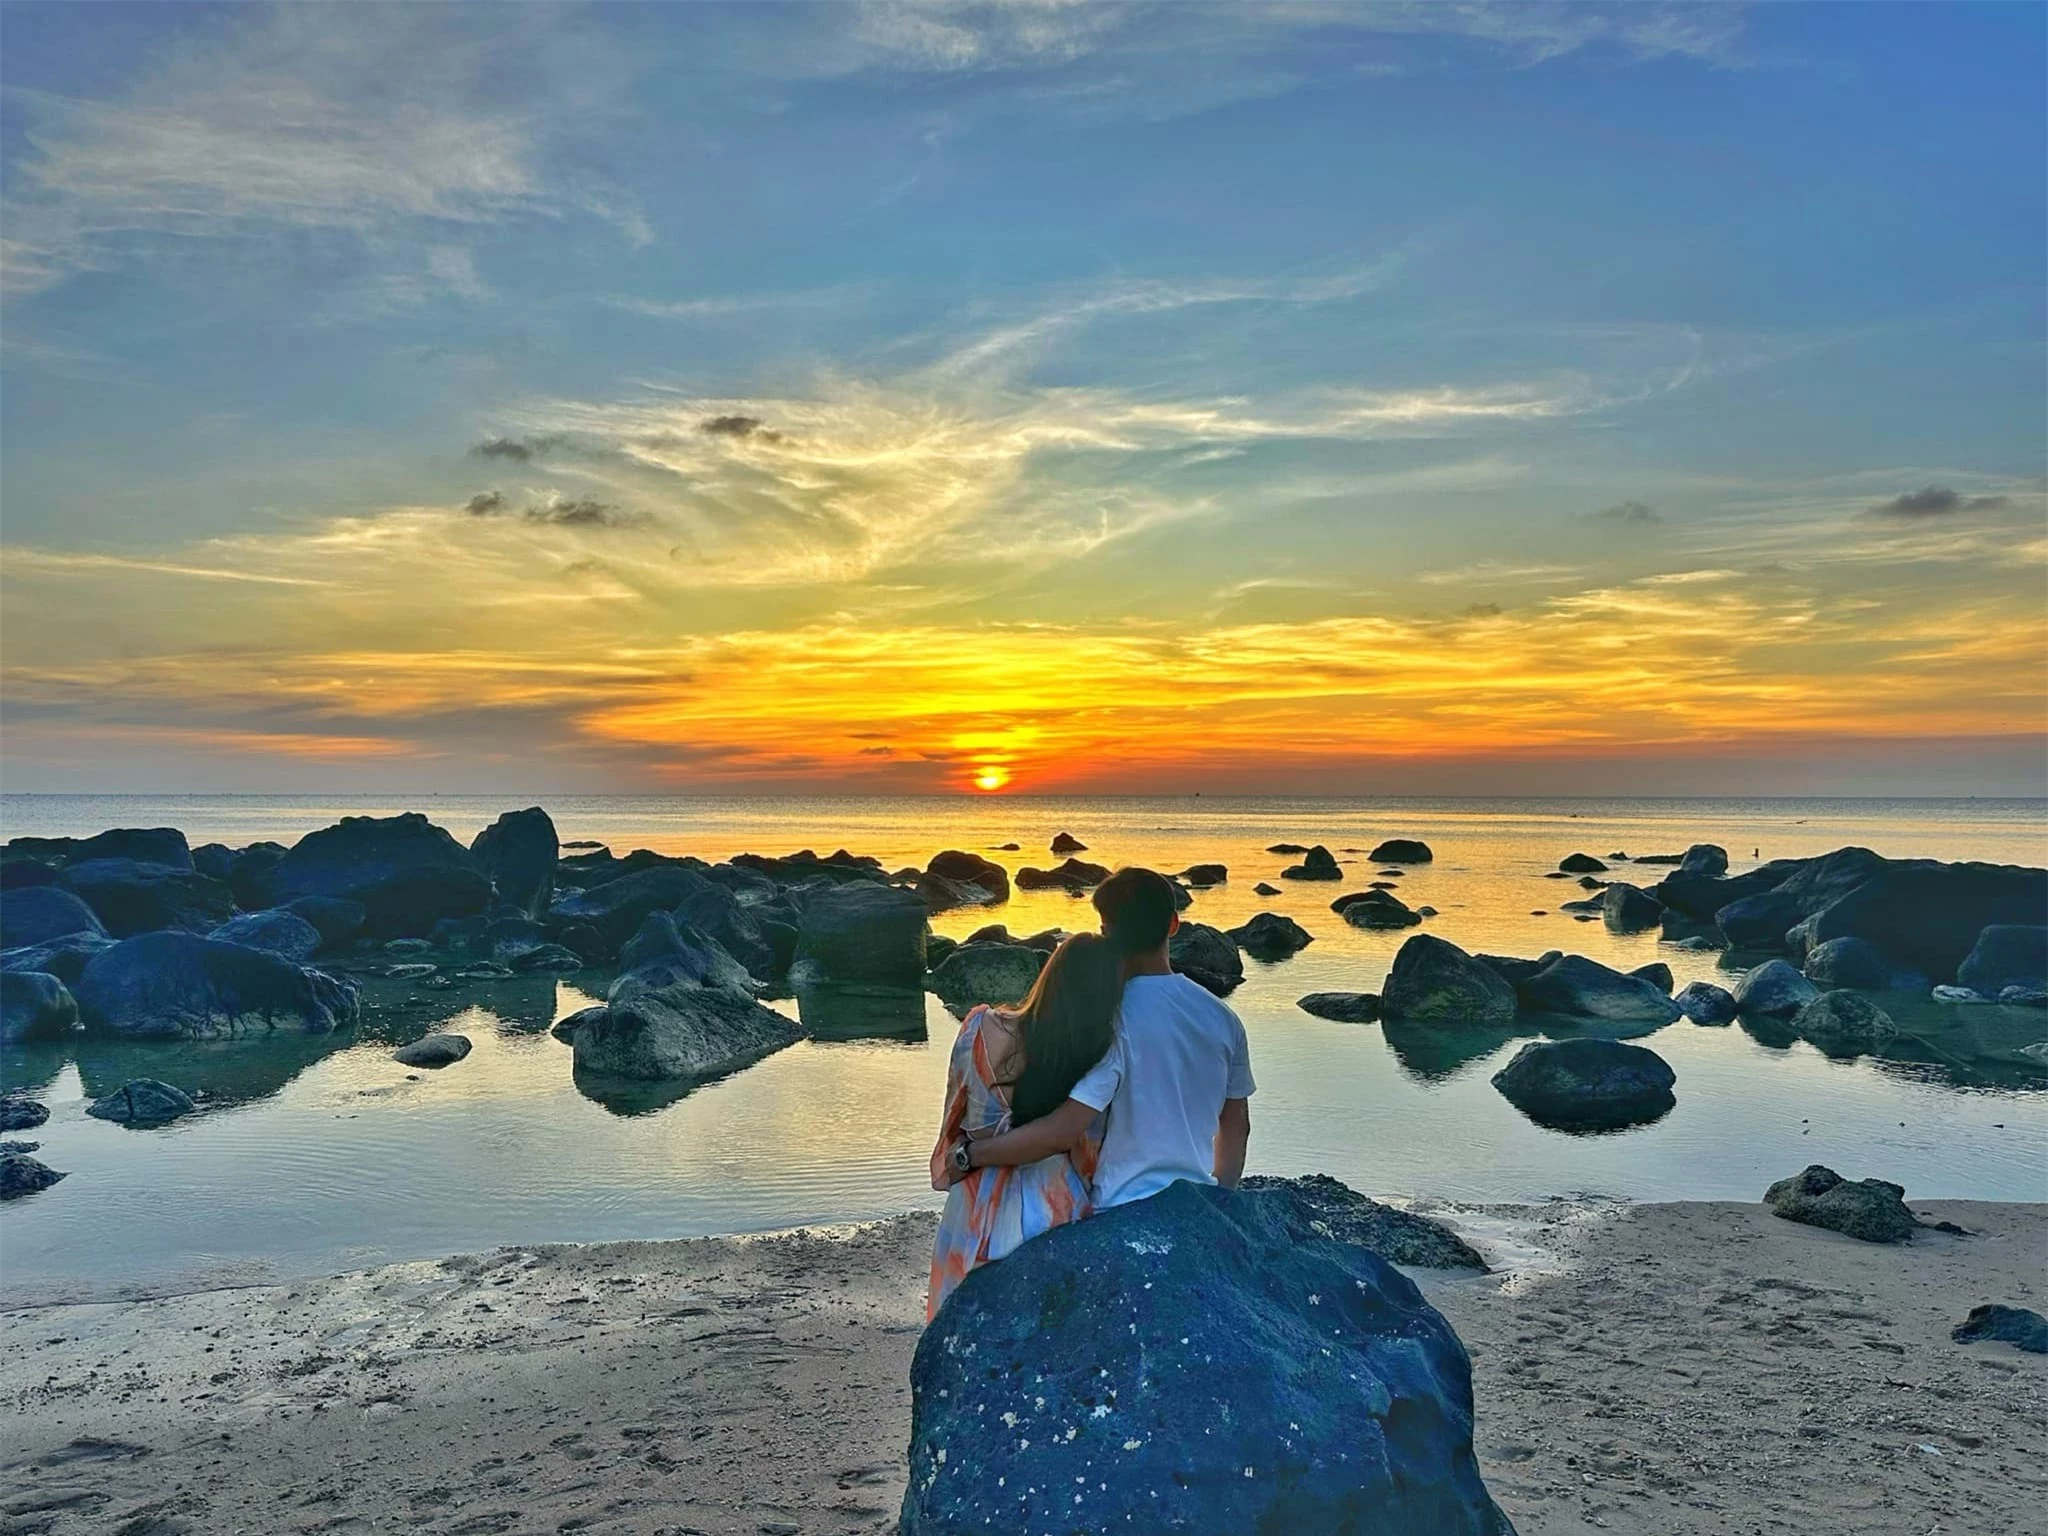 Khám phá thêm nhiều góc ảnh đẹp và lạ ở đảo Phú Quý - 19